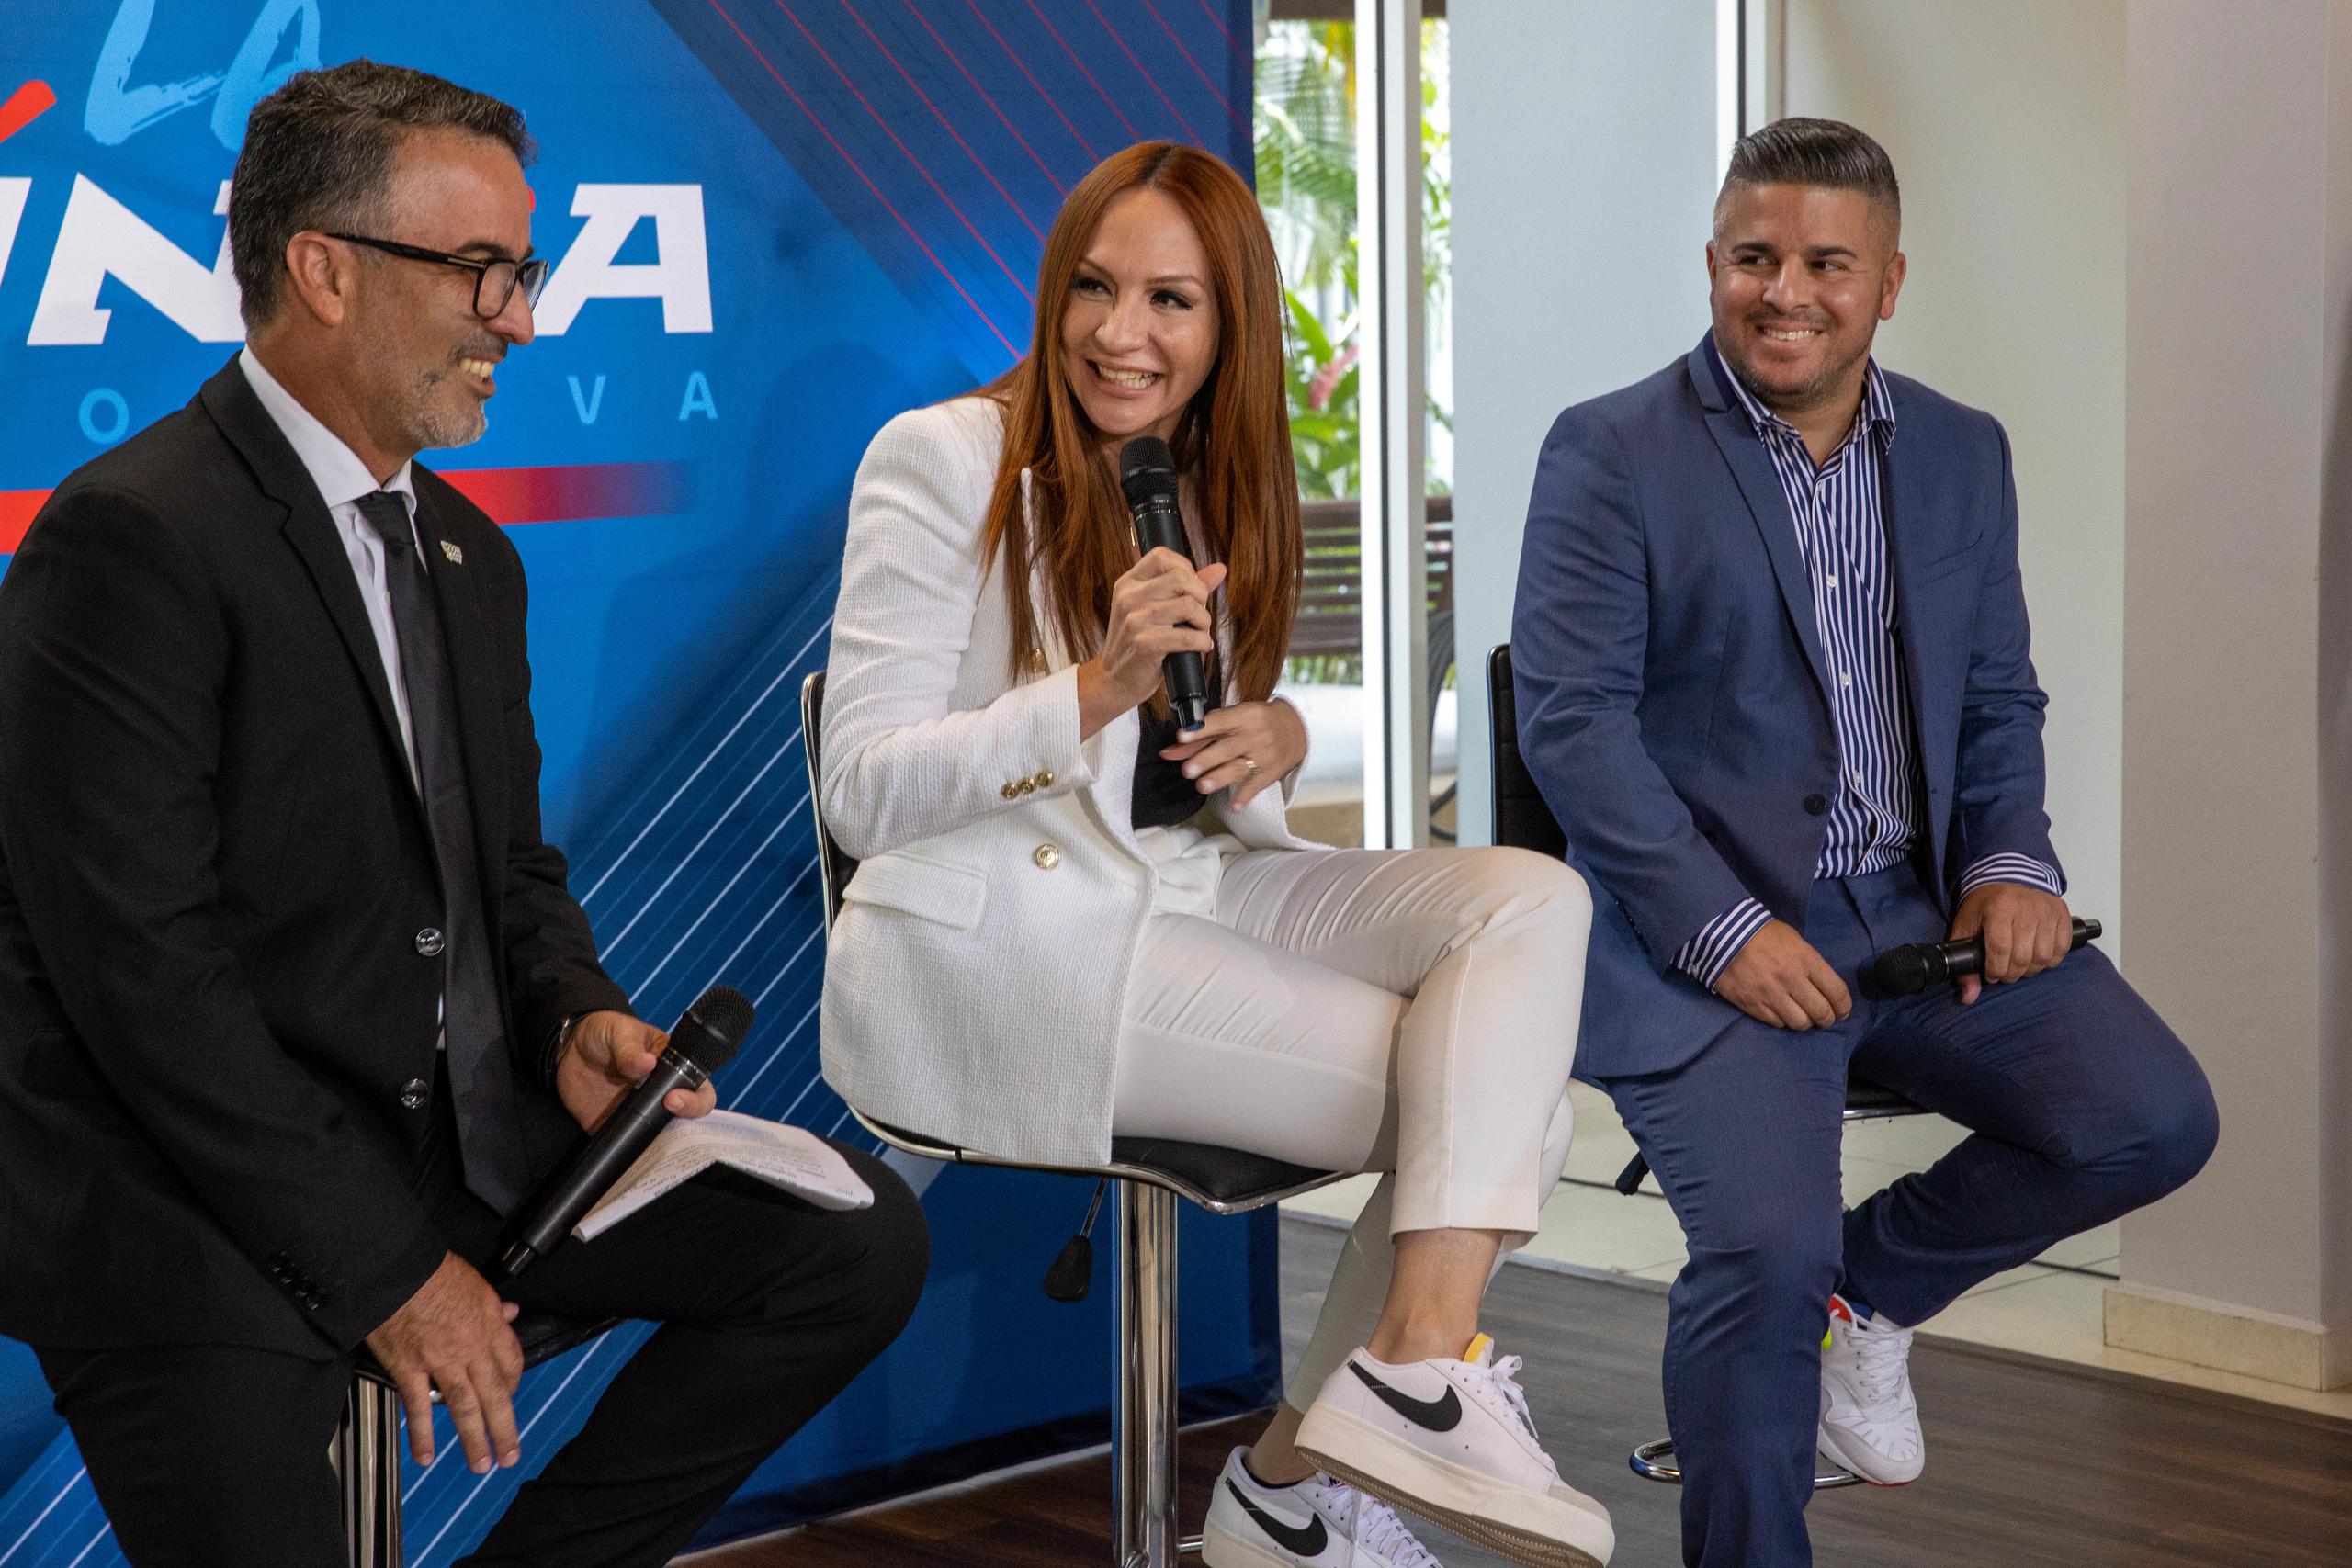 El gerente de WAPA Deportes, Paco Vargas, presentó a Natalia Meléndez y Kefrén Velázquez como los moderadores del programa La Línea Deportiva.  (Suministrada/J.Pérez-Mesa-WapaDeportes)